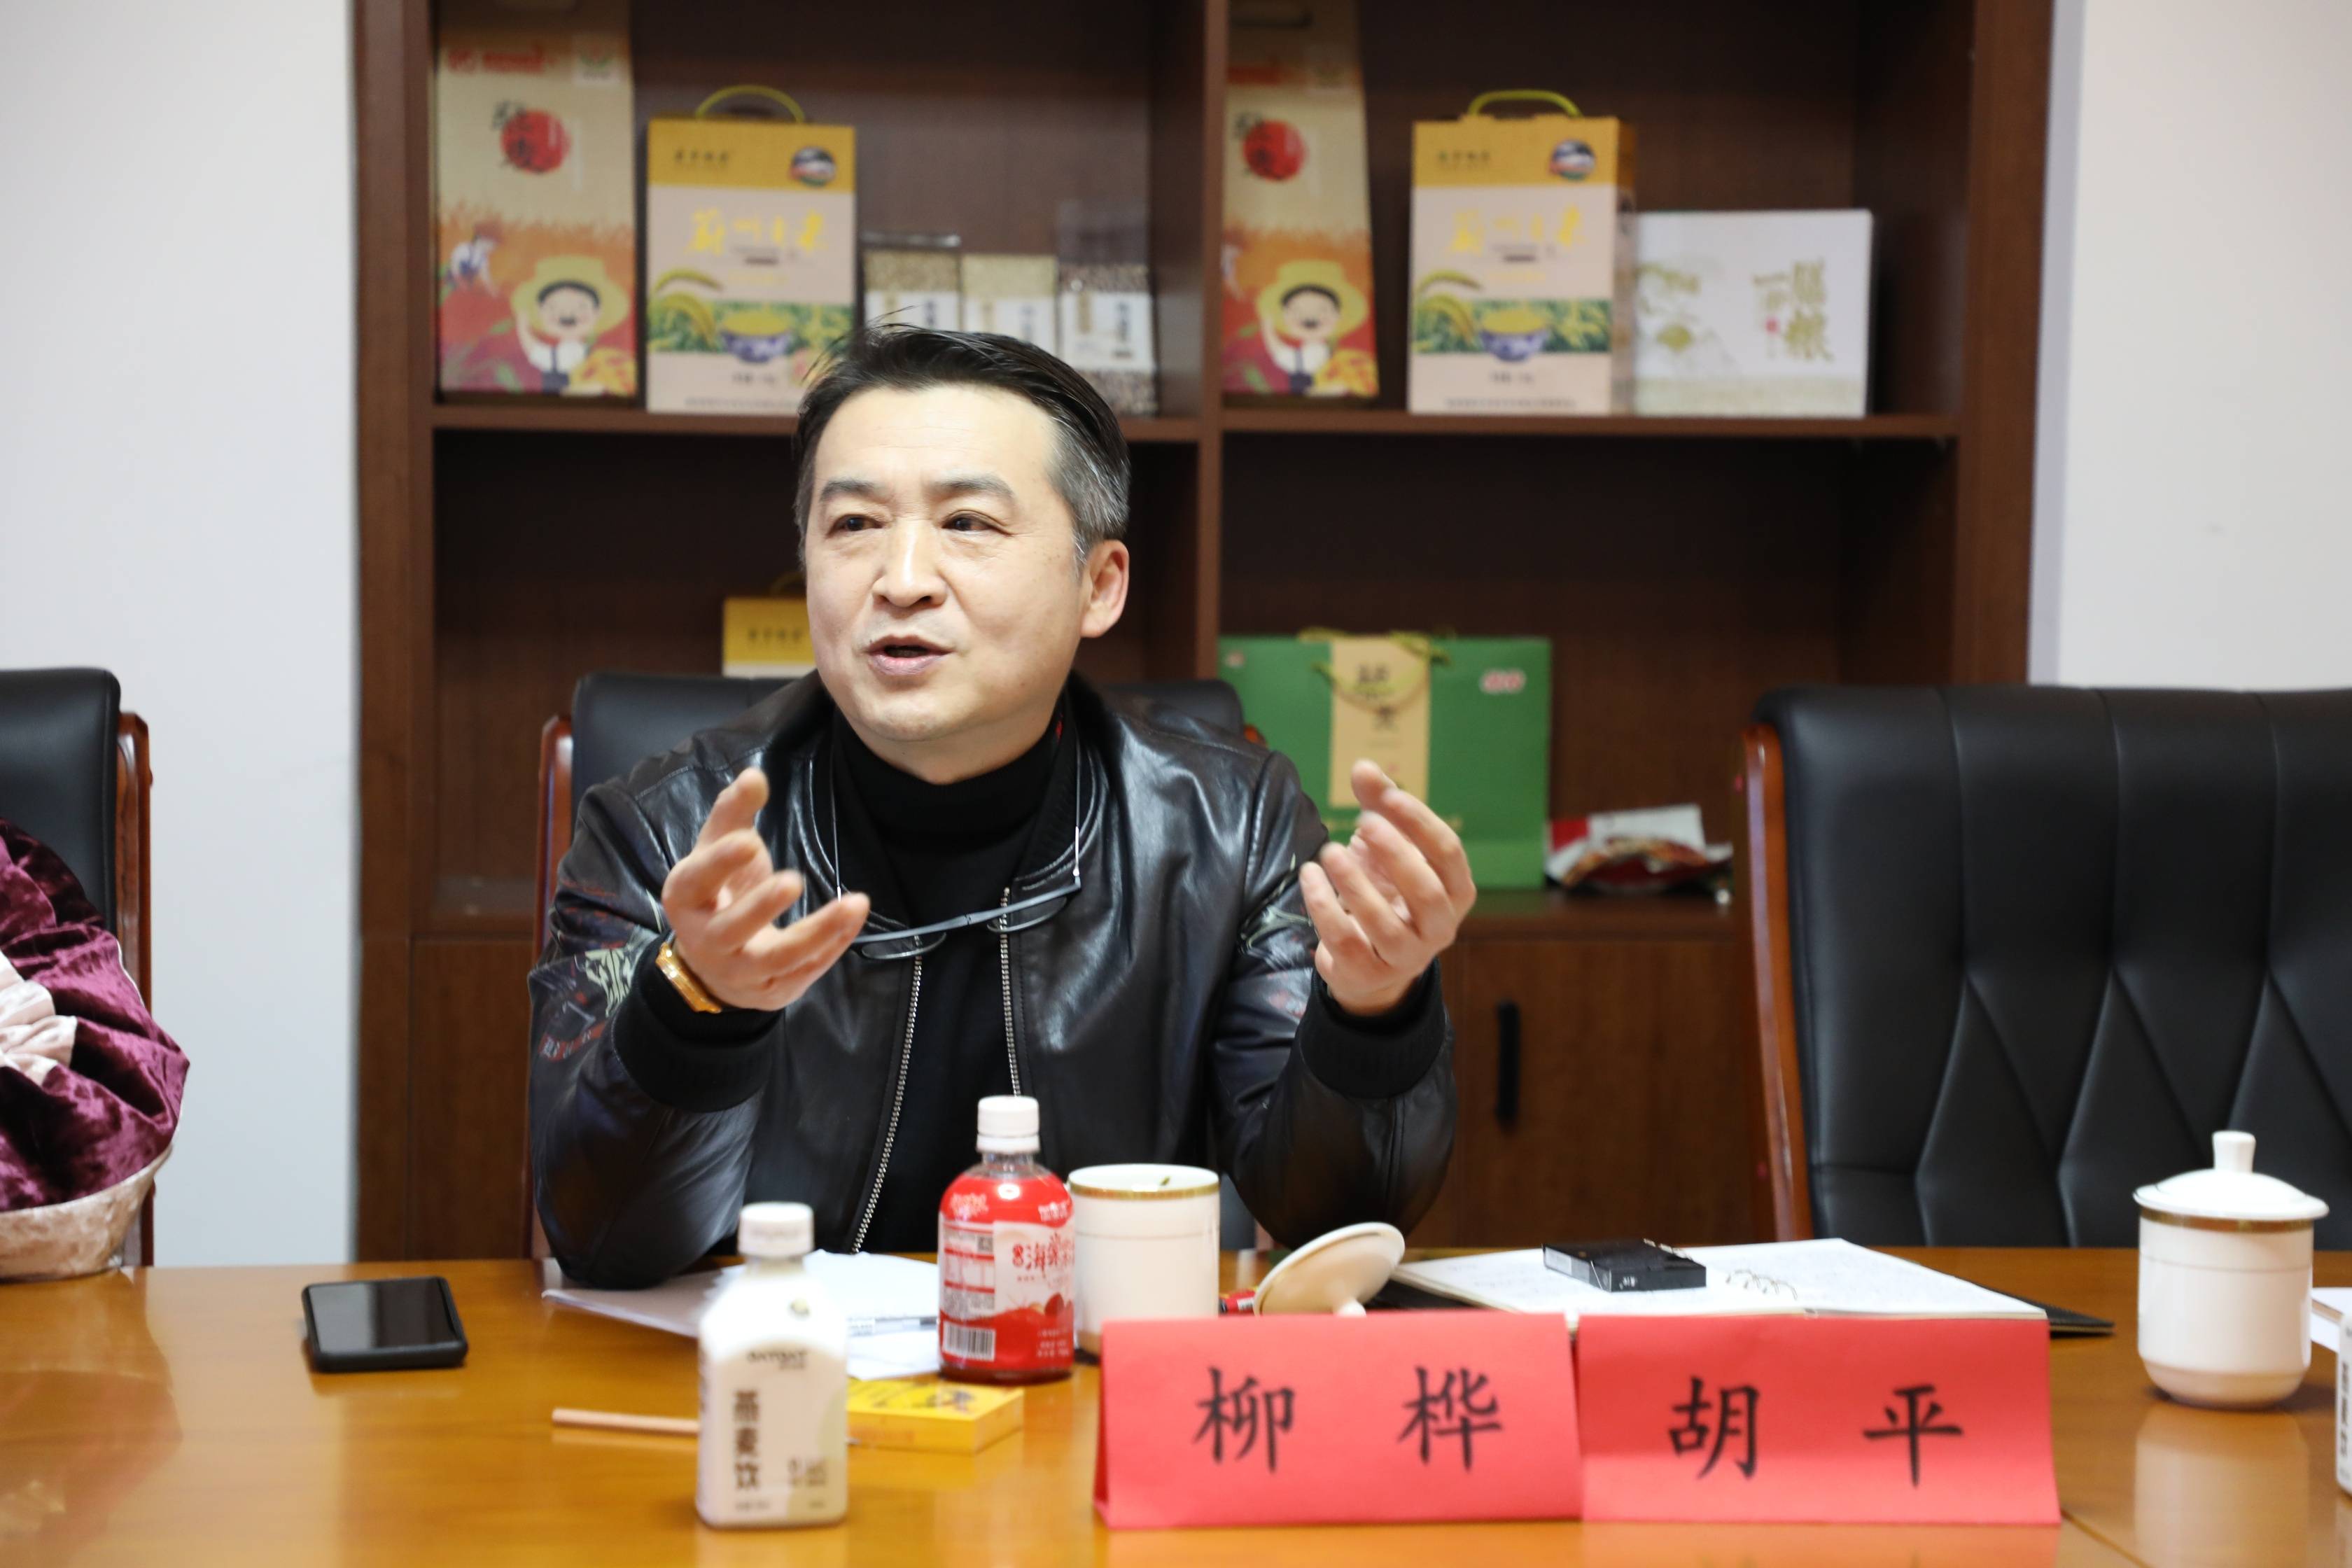 电影《我爱你，塞北》在京举办剧本研讨会 今年三月底开机